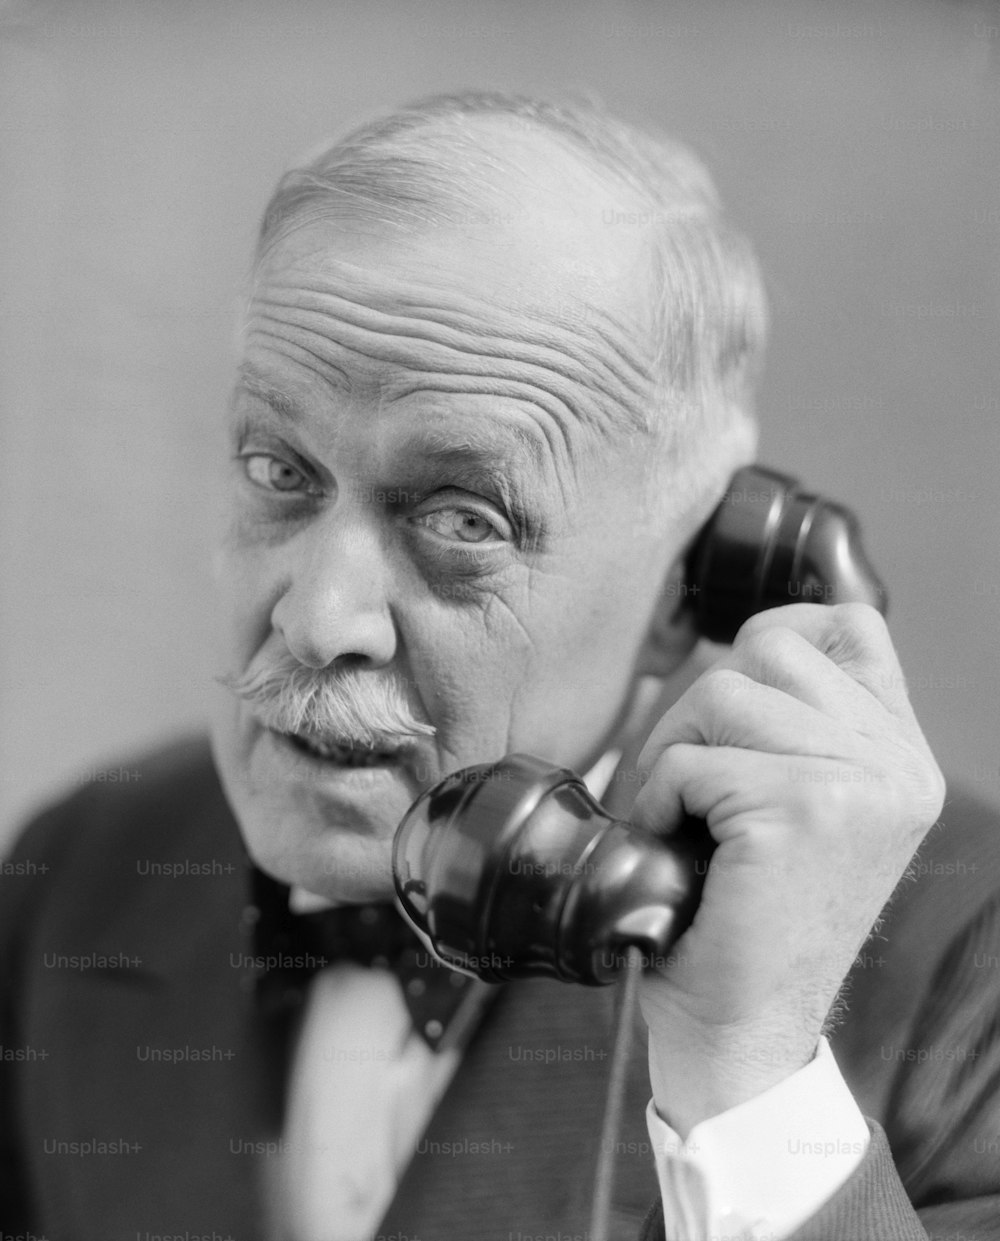 STATI UNITI - Anni '30 circa: uomo anziano colpito alla testa al telefono preoccupato espressione preoccupata baffi sopracciglia rugose fronte papillon distinto uomo d'affari.